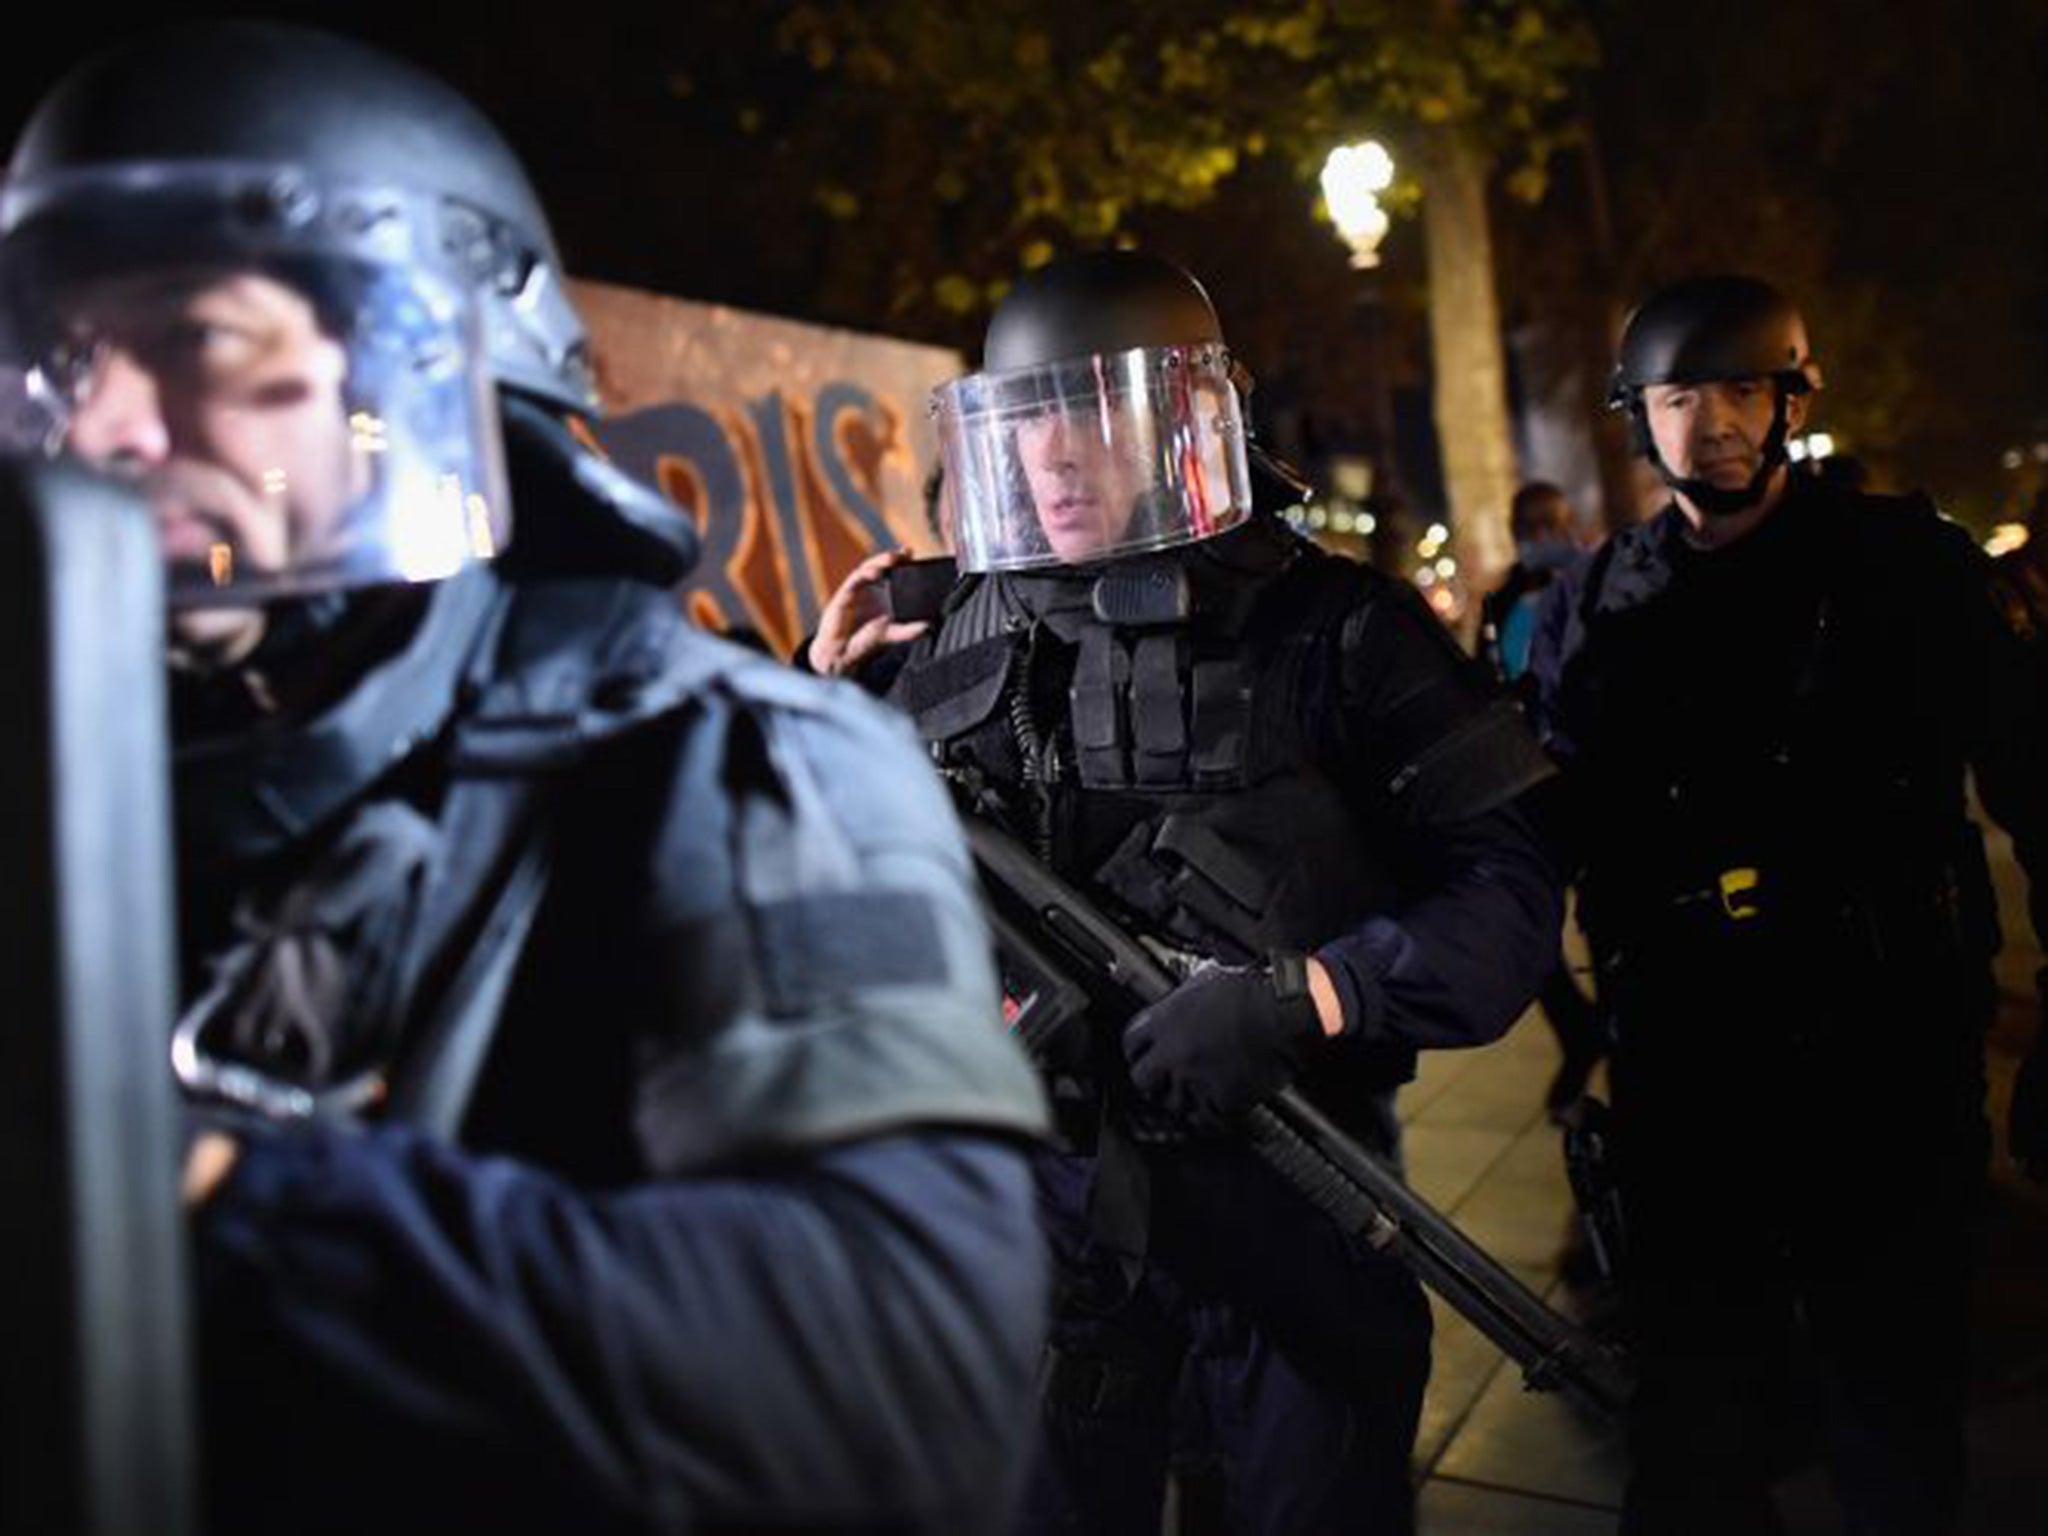 Armed police are deployed in Place de la Republique in Paris